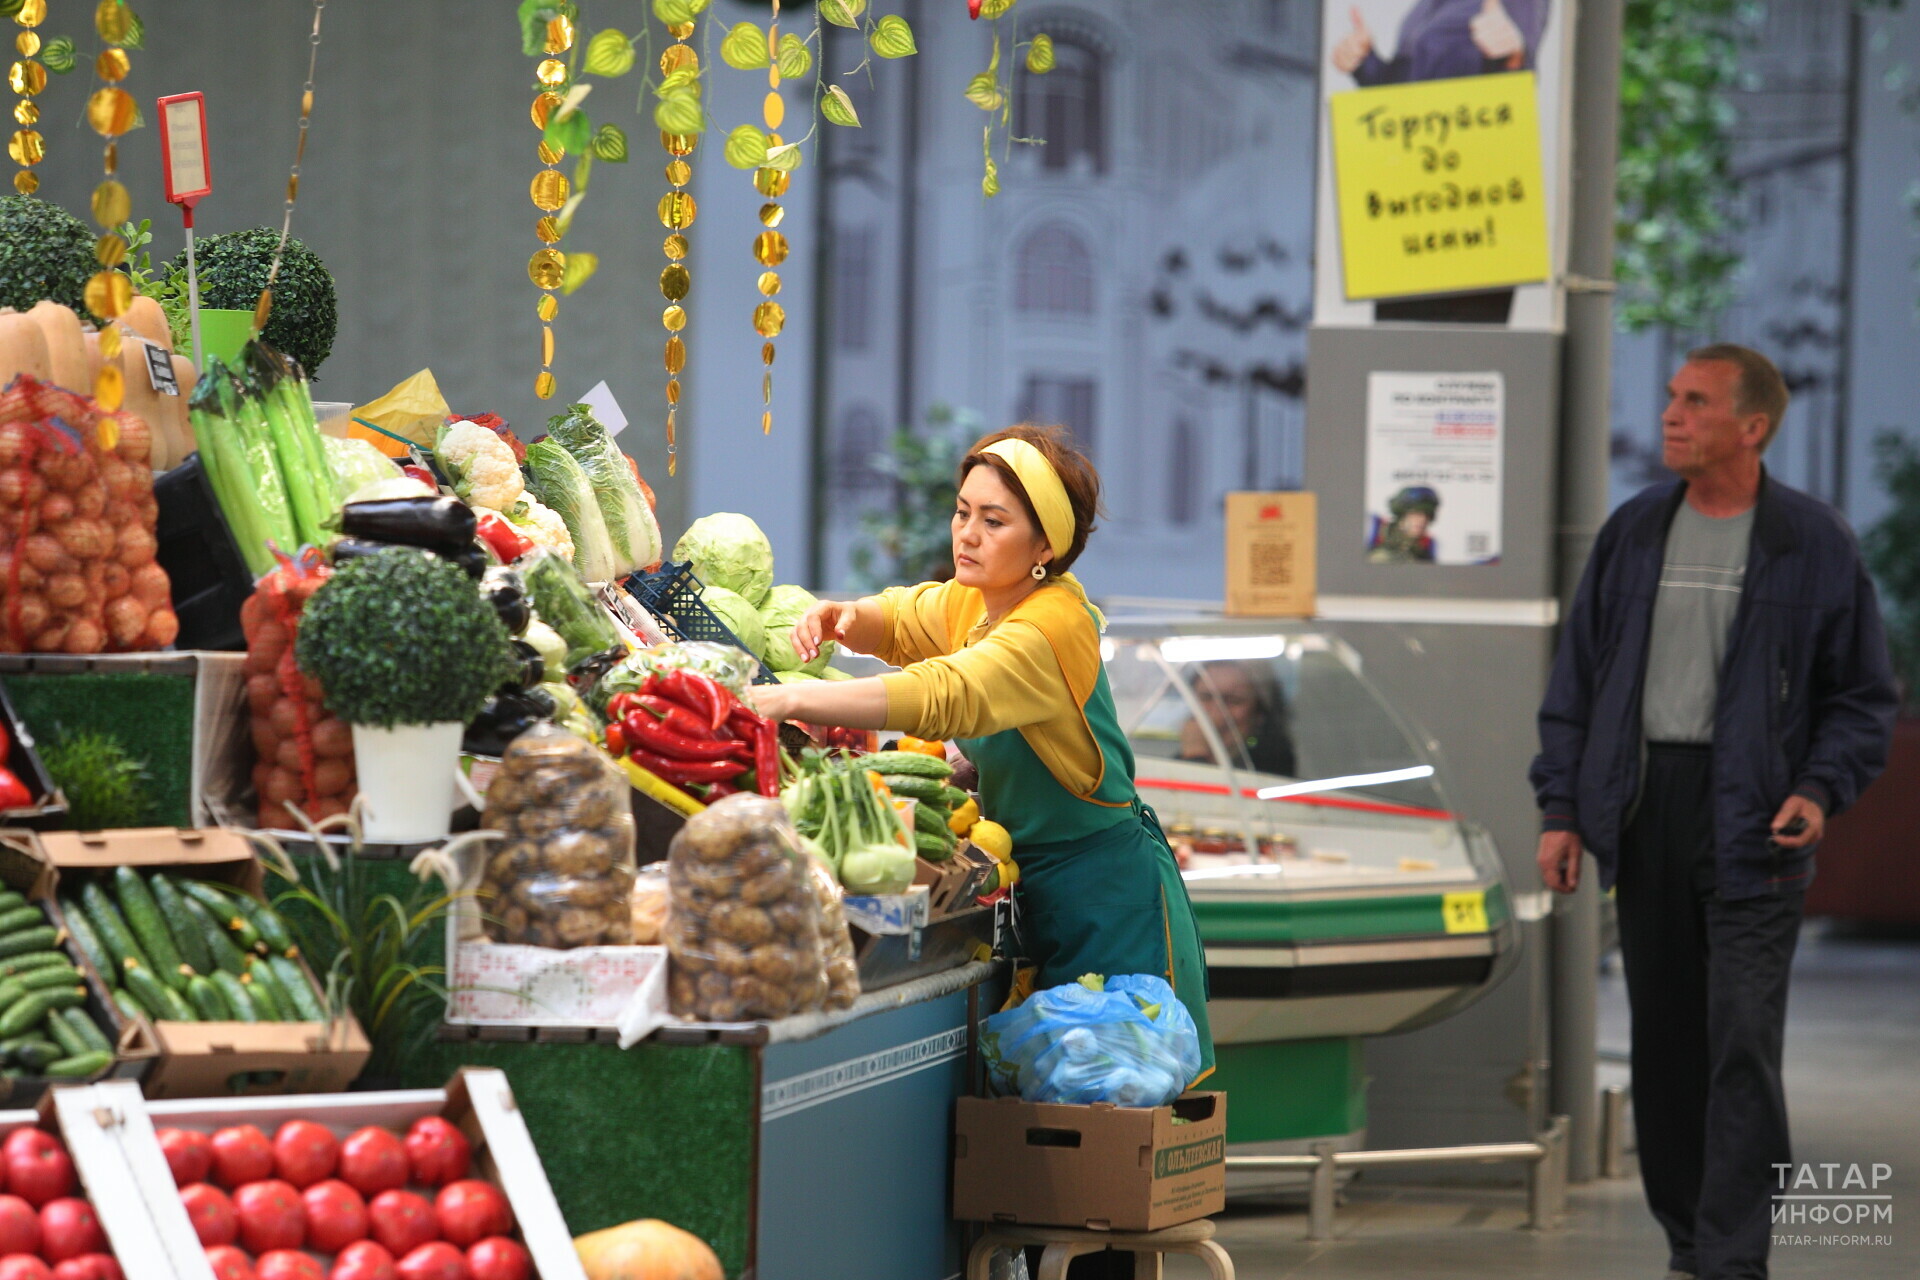 Цены на овощи и фрукты в Татарстане за год выросли на 18%